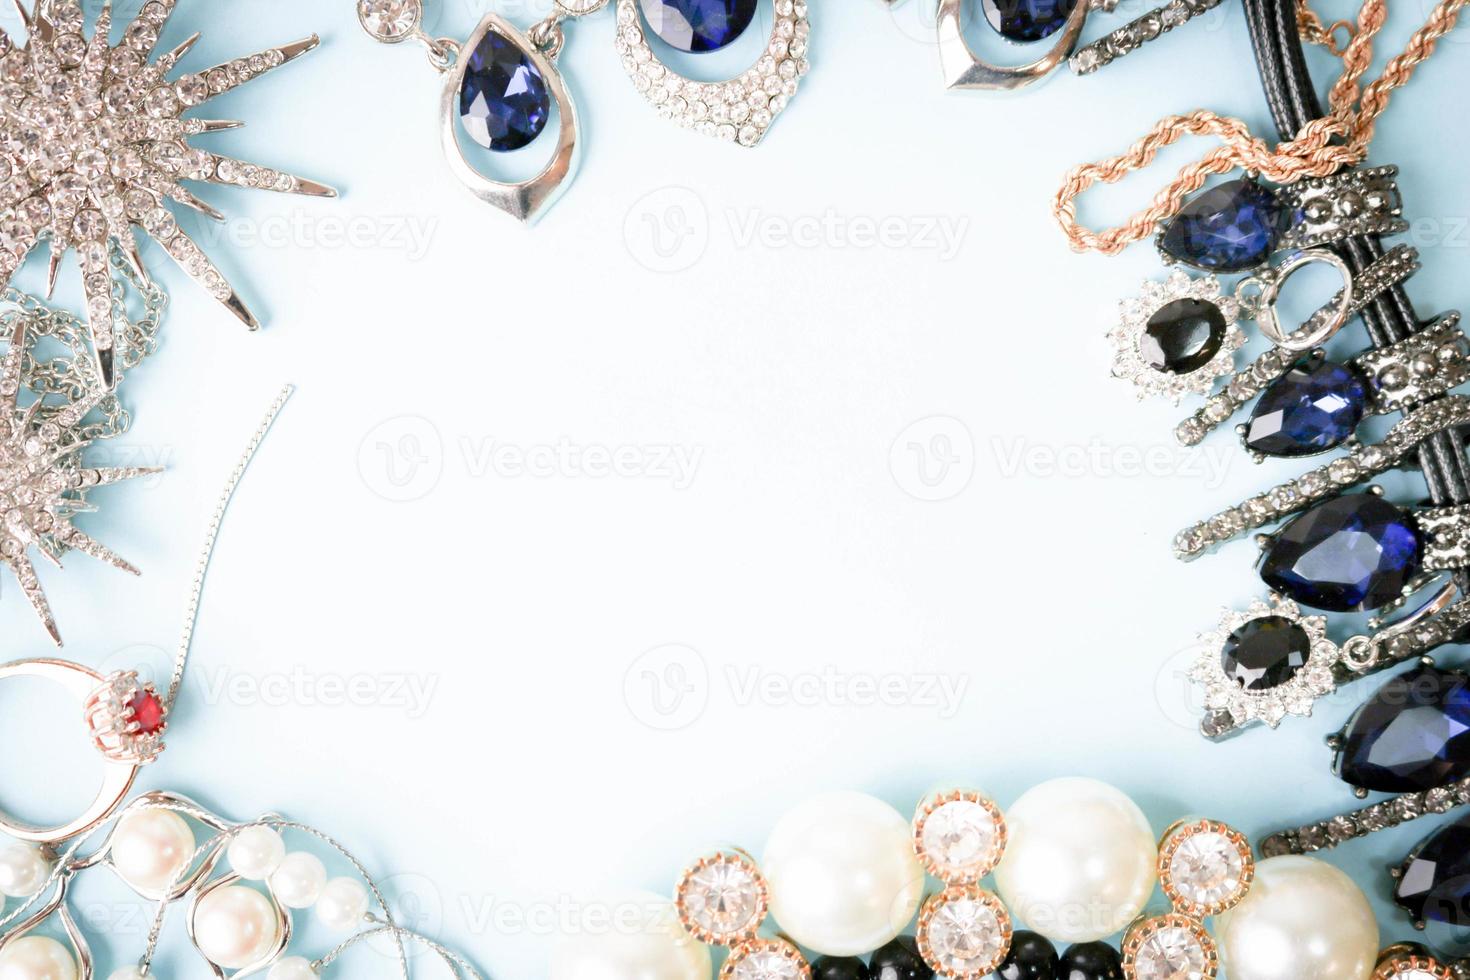 mooi kostbaar glimmend sieraden modieus glamoureus sieraden set, ketting, oorbellen, ringen, kettingen, broches met parels en diamanten Aan een blauw achtergrond. vlak leggen, top visie, kopiëren plaats foto